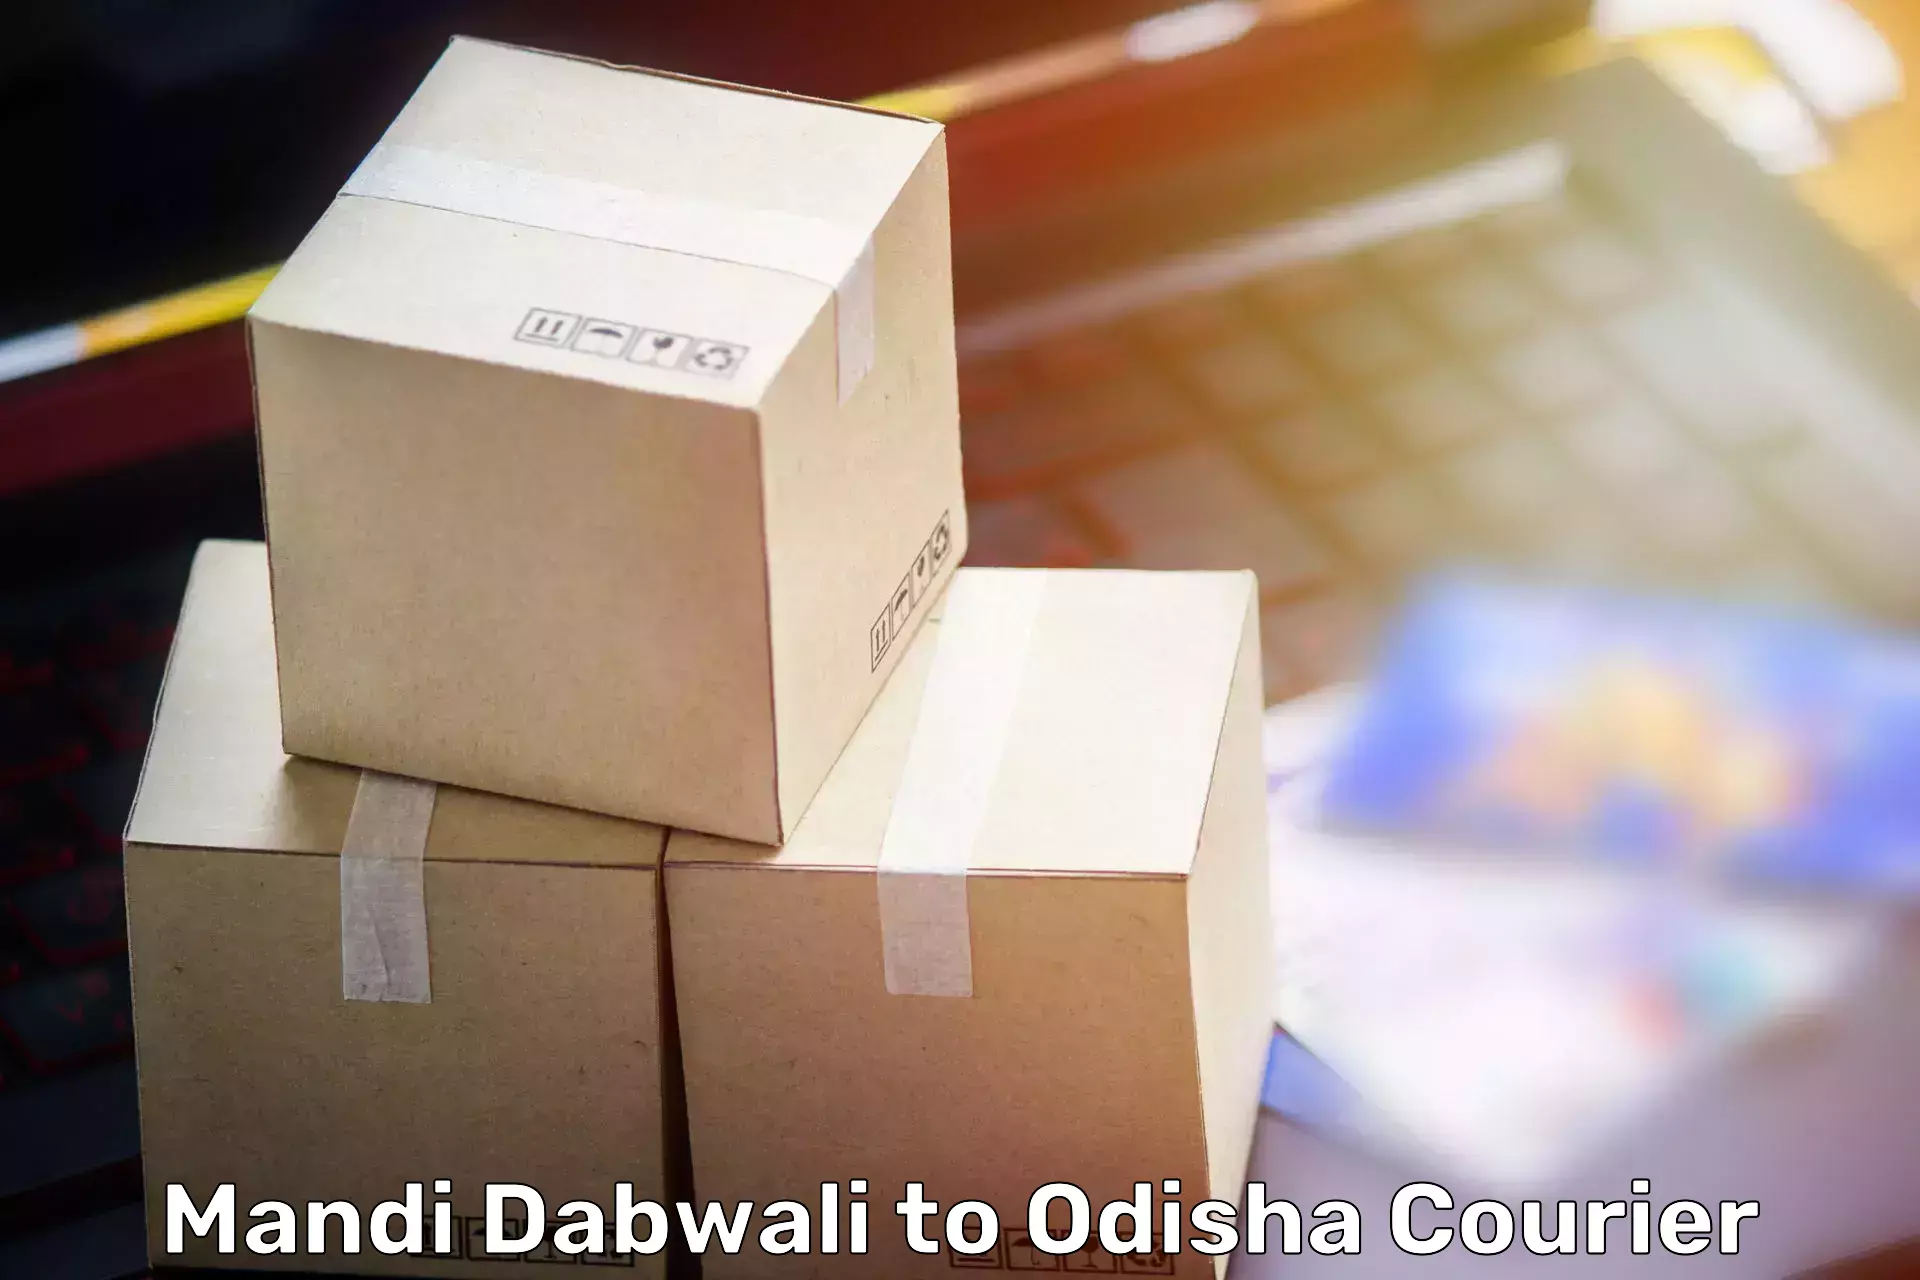 Professional moving company Mandi Dabwali to Asika